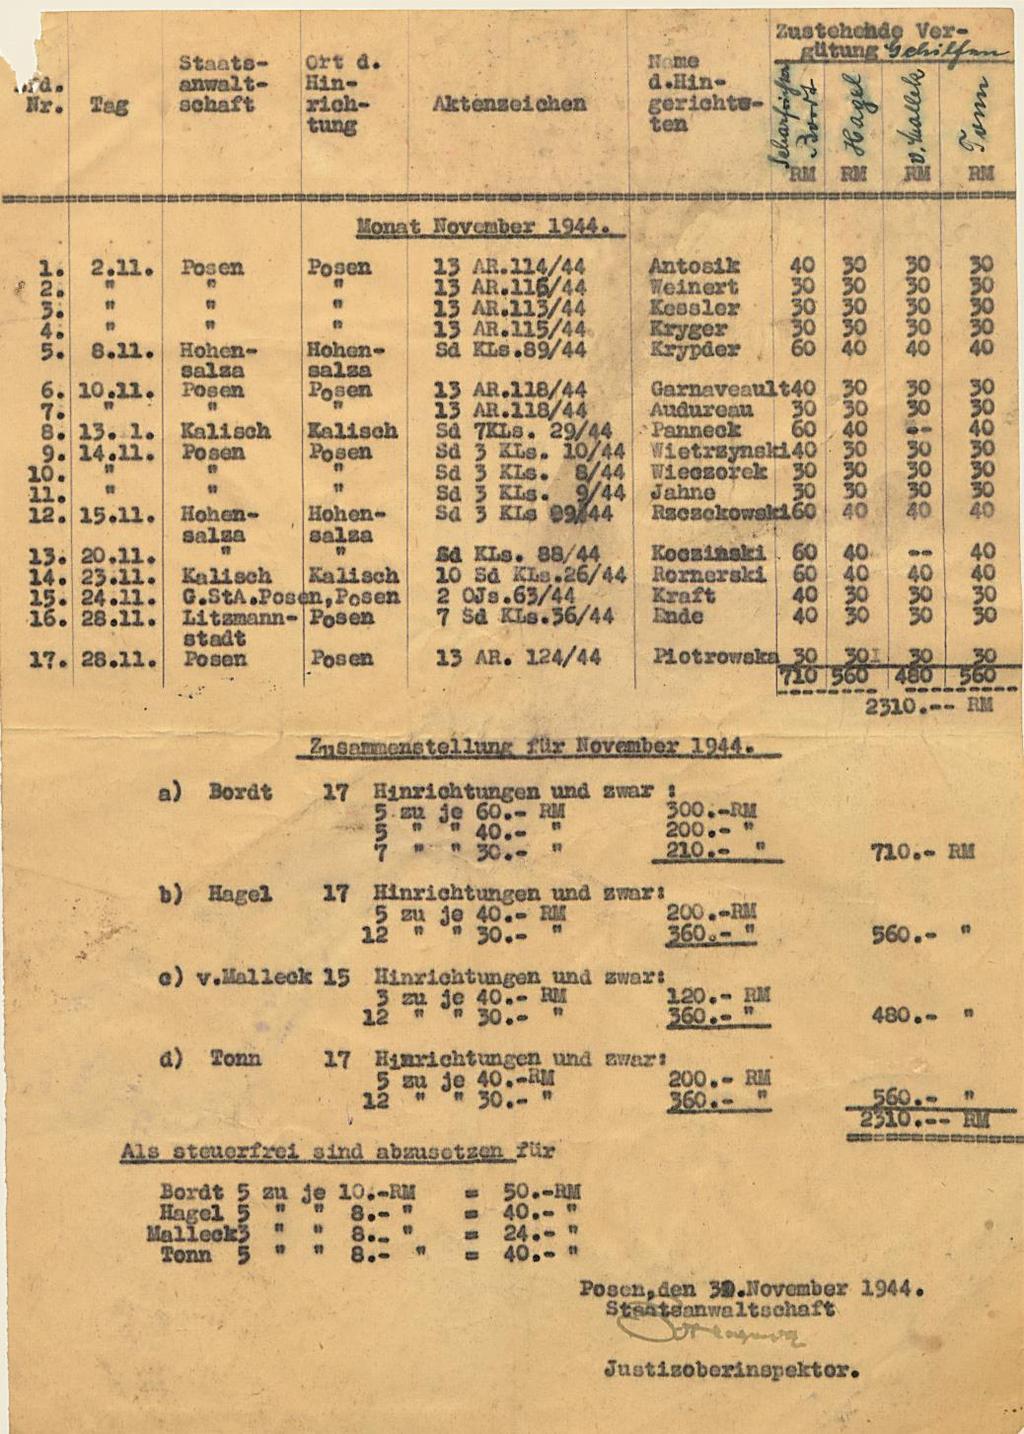 Fot. 3. Lista wynagrodzeń z listopada 1944 r. Źródło: I. Z. Dok. I 75.